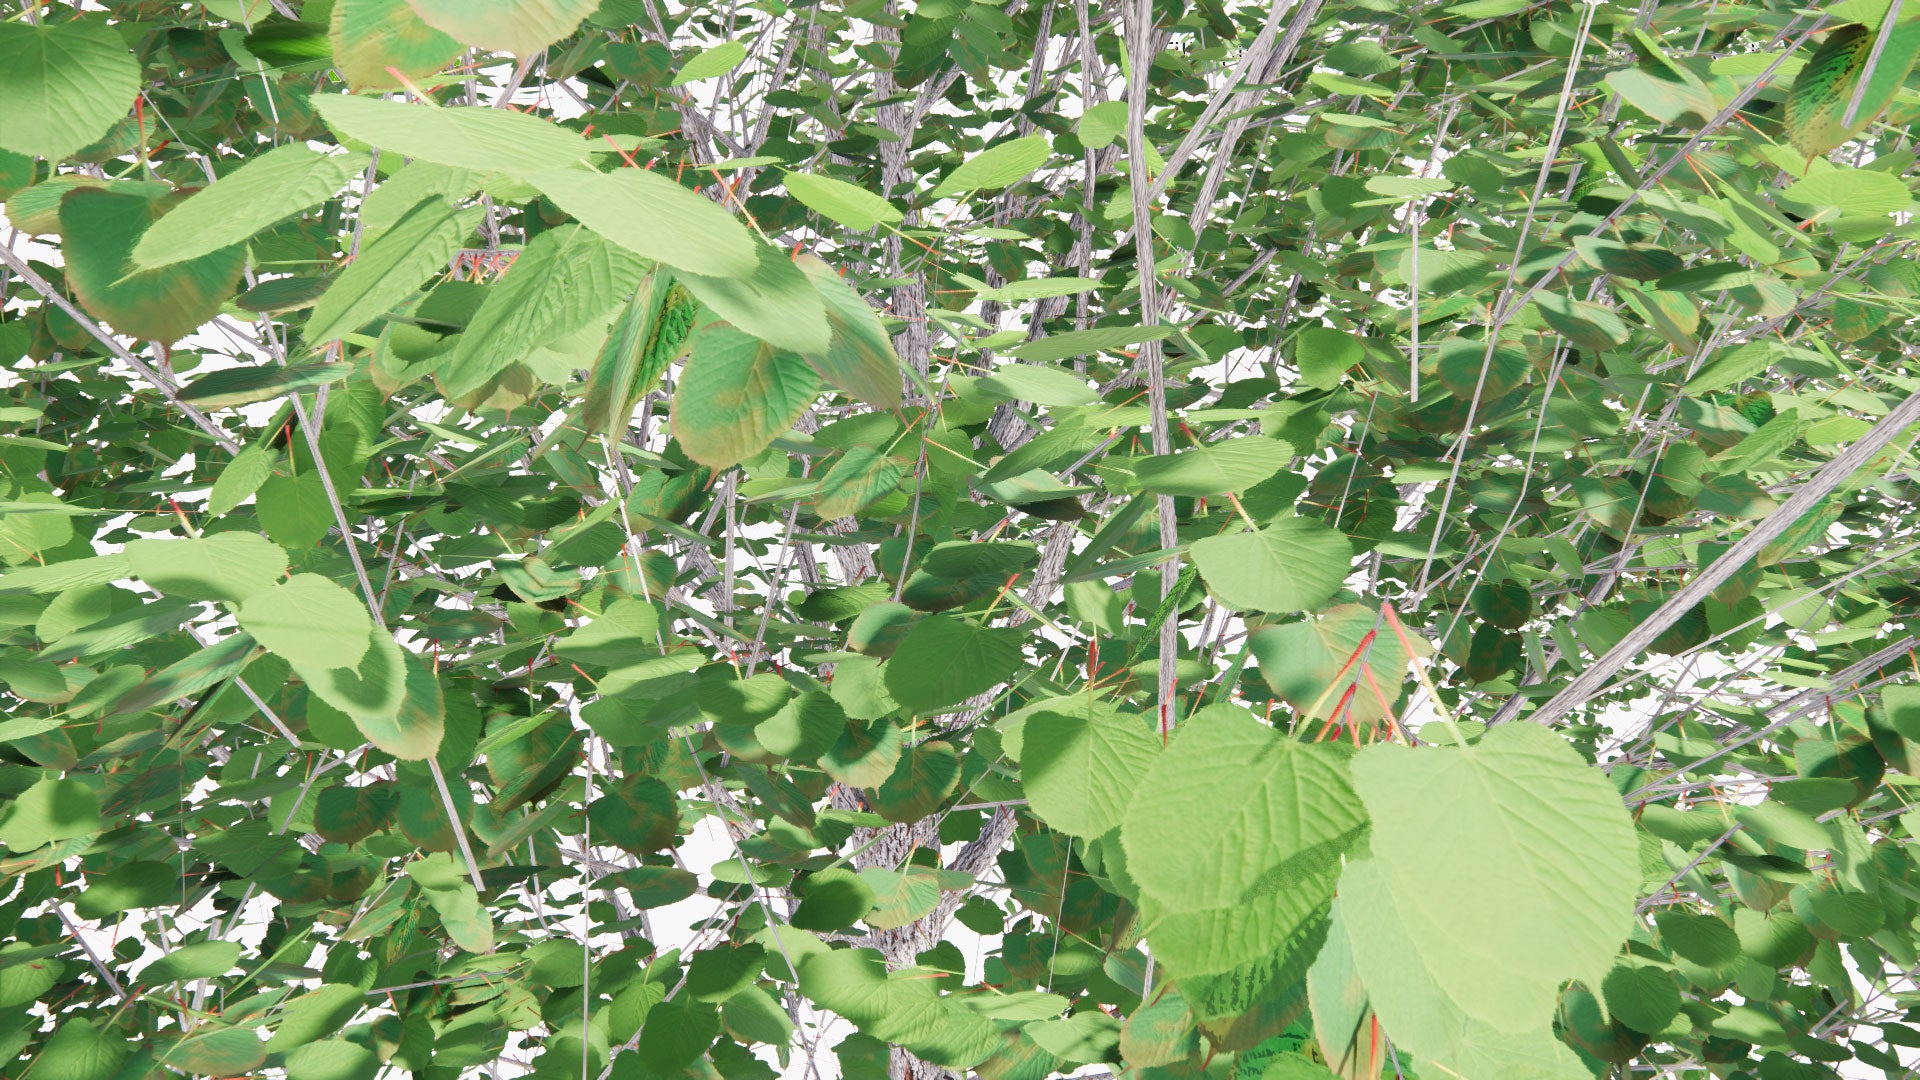 Low Poly Tilia Platyphyllos - Large-Leaved Lime, Large-Leaved Linden, Bohuslind (3D Model)